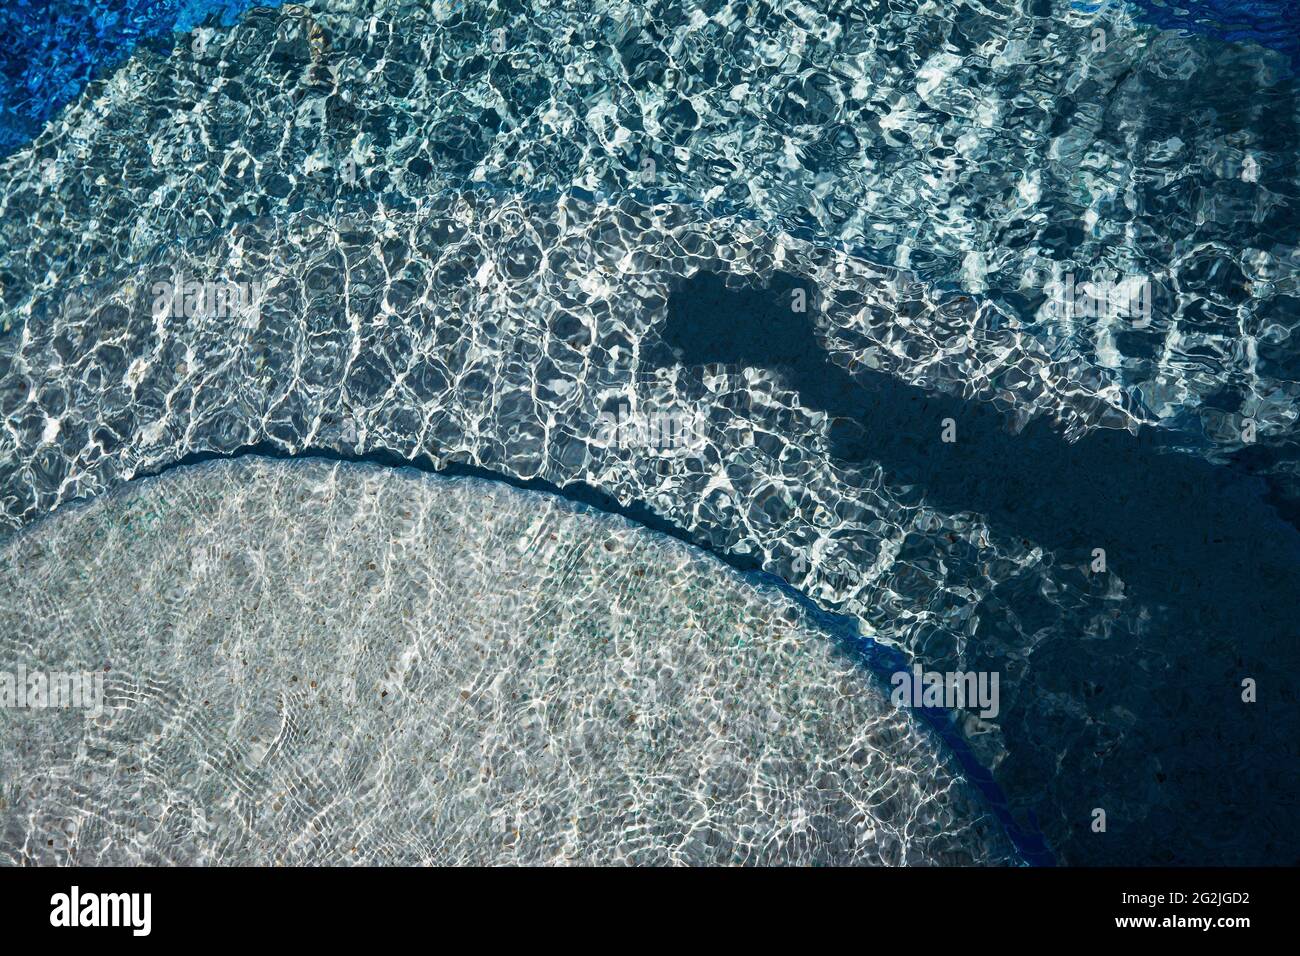 Sommerstimmung, plätschernde Wellen im Pool, Wabenmuster, Schatten zeigt Arm mit Kamera Stockfoto